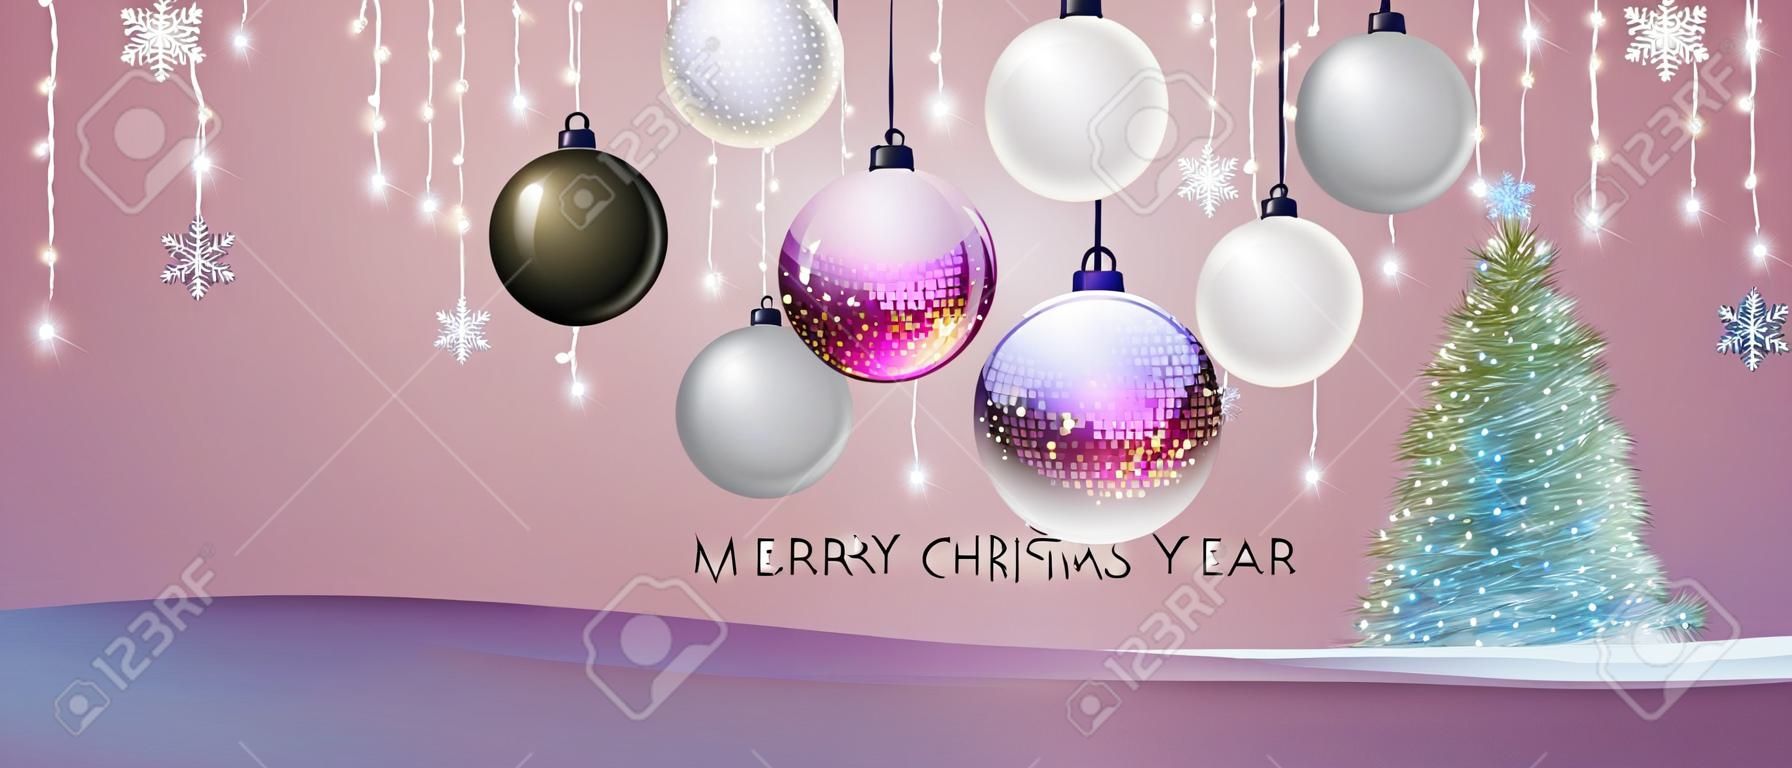 Cartel de feliz Navidad y feliz año nuevo con adornos navideños. Fondo de vacaciones de Navidad. ilustración vectorial